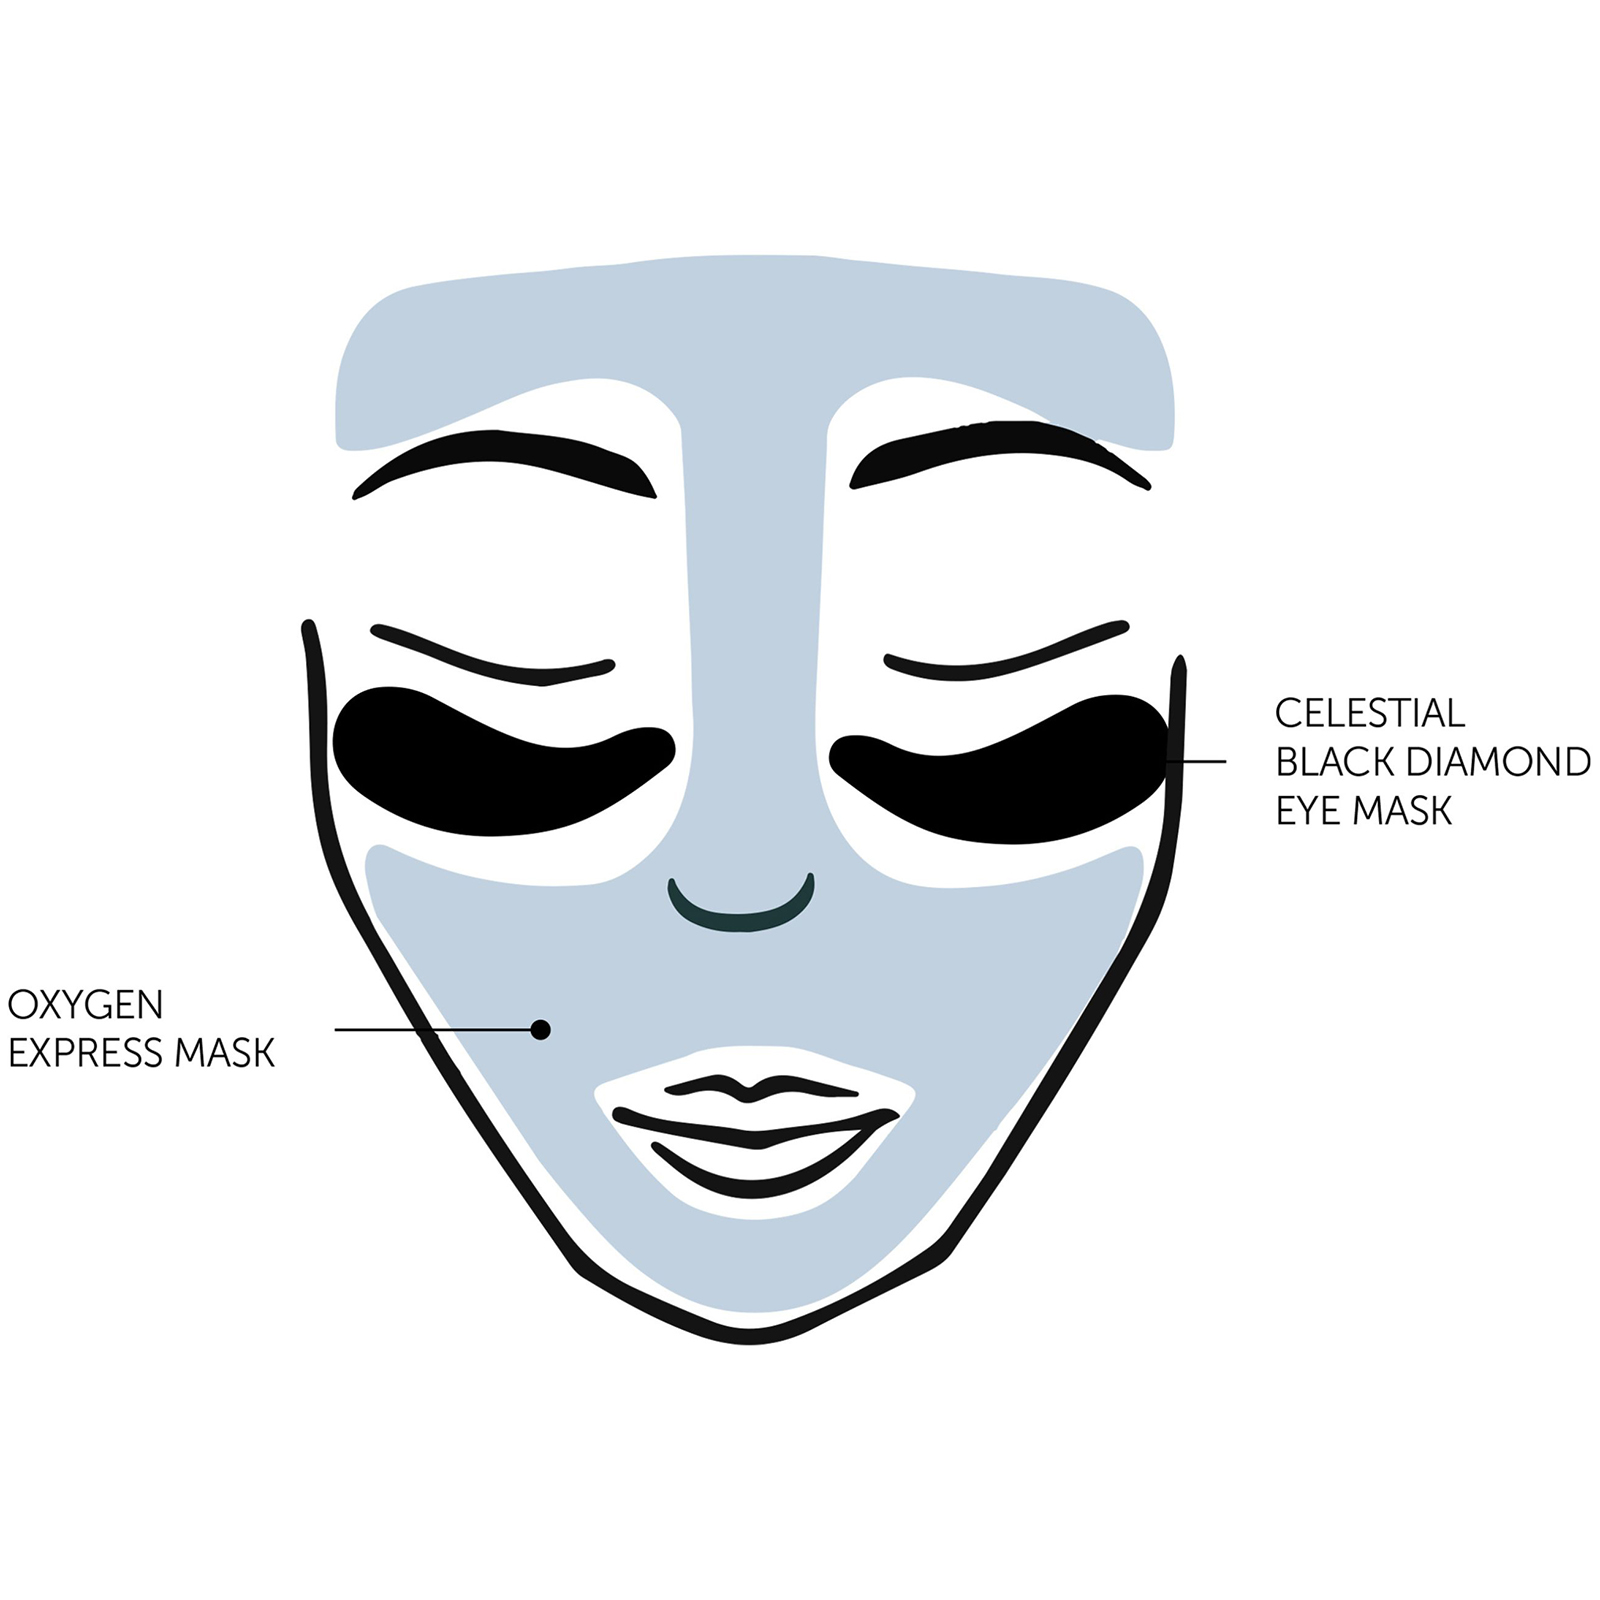 Oxygen express mask, celestial black diamond eye mask